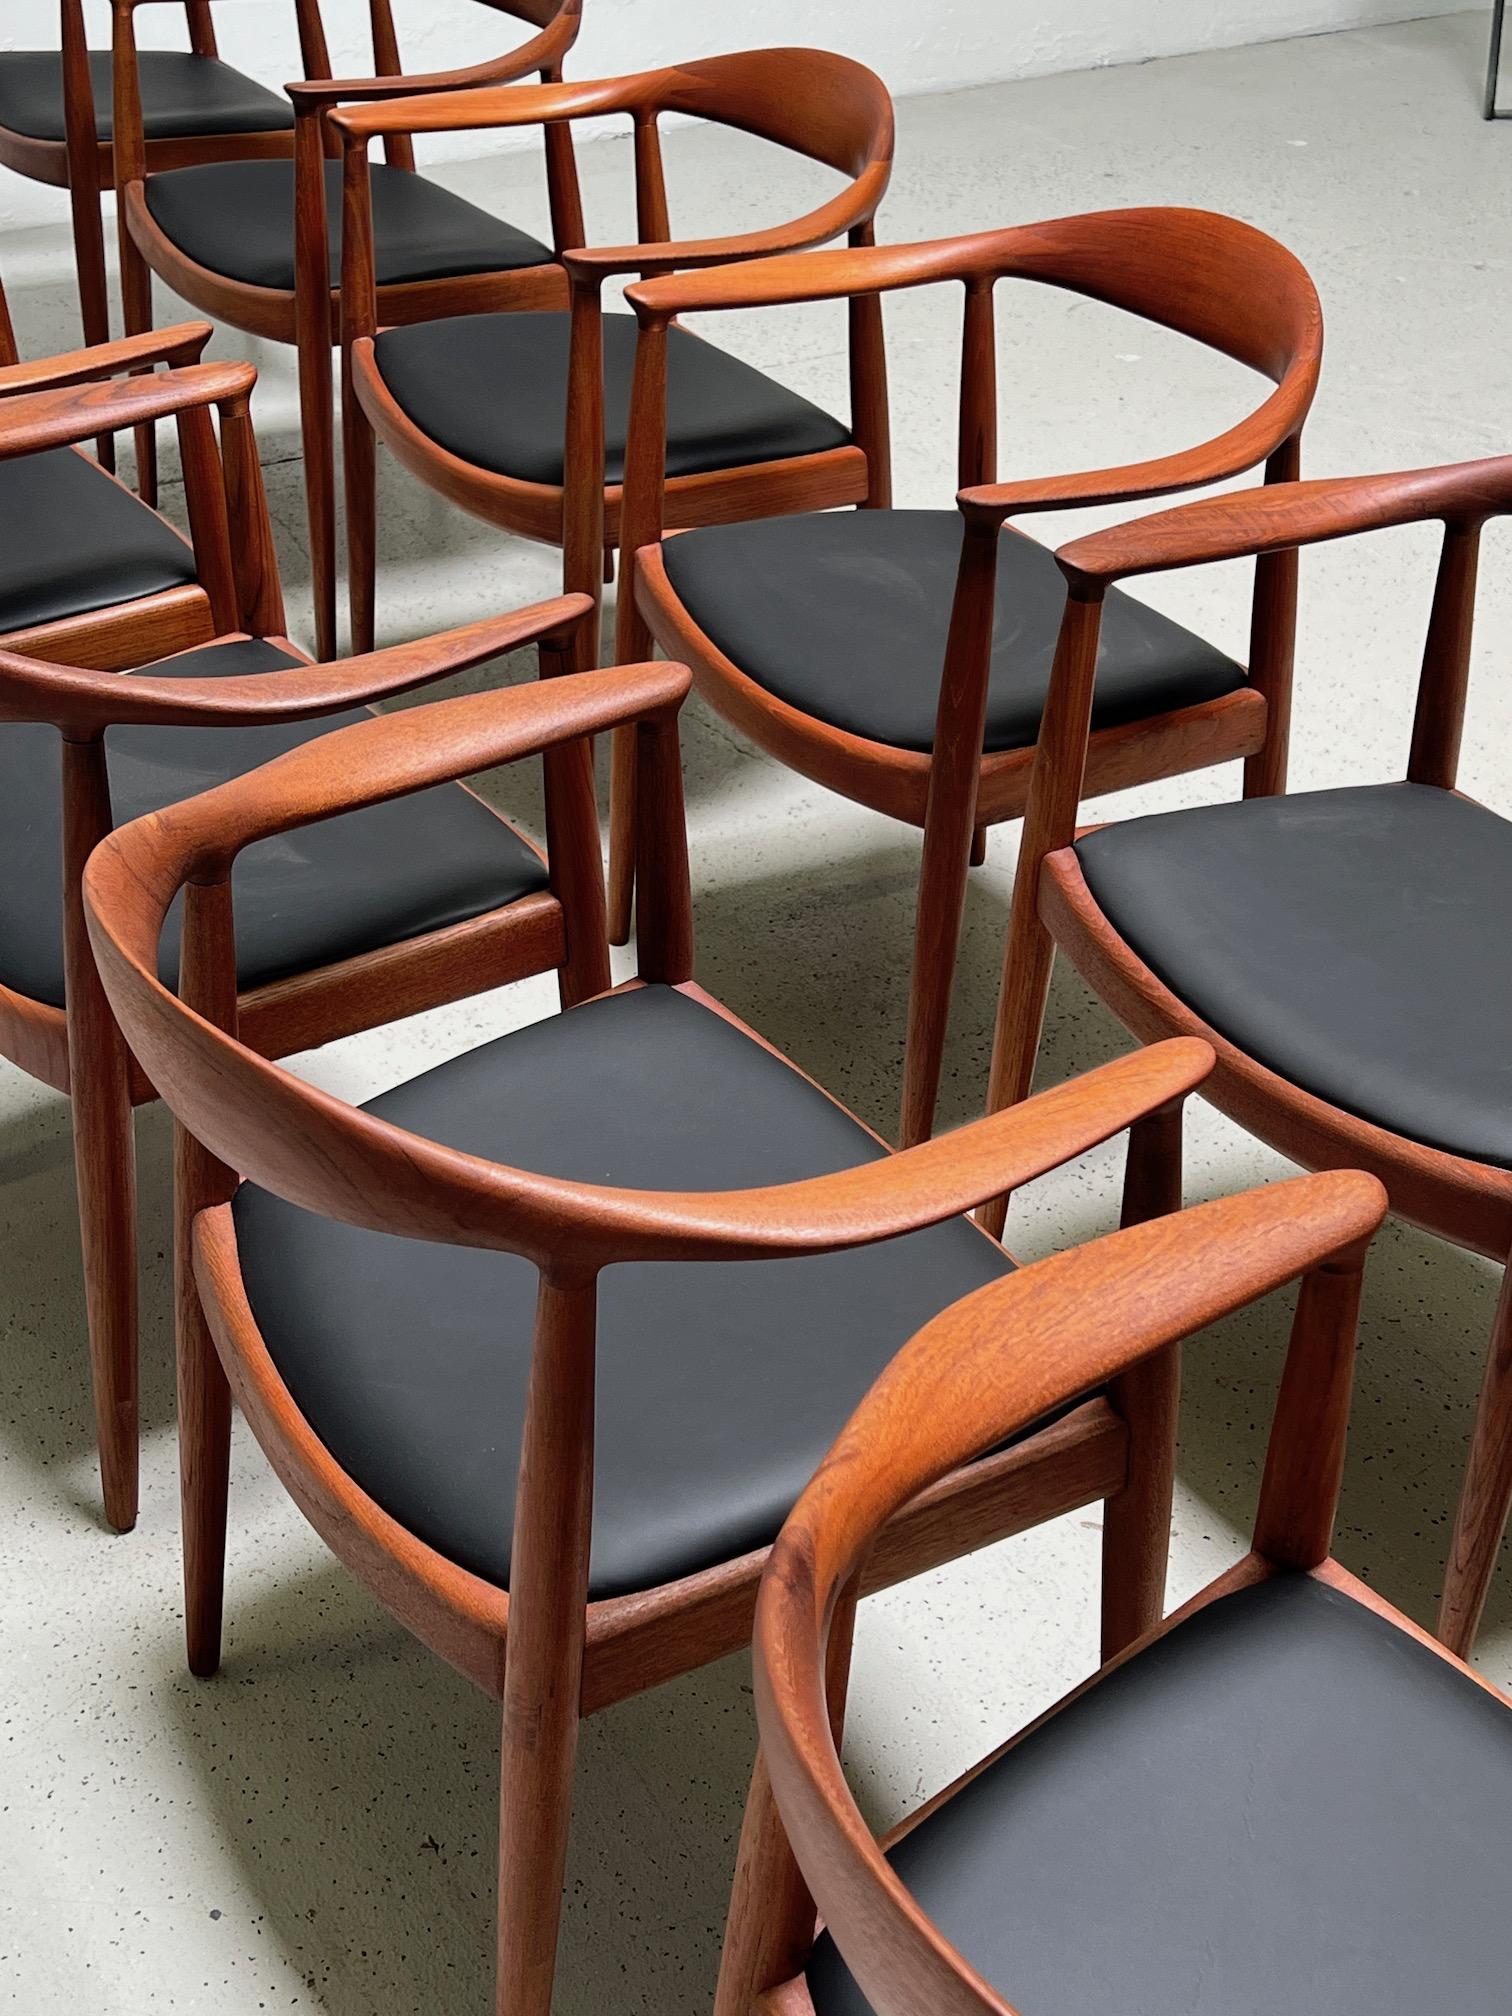 Twelve Teak Round Chairs by Hans Wegner 1